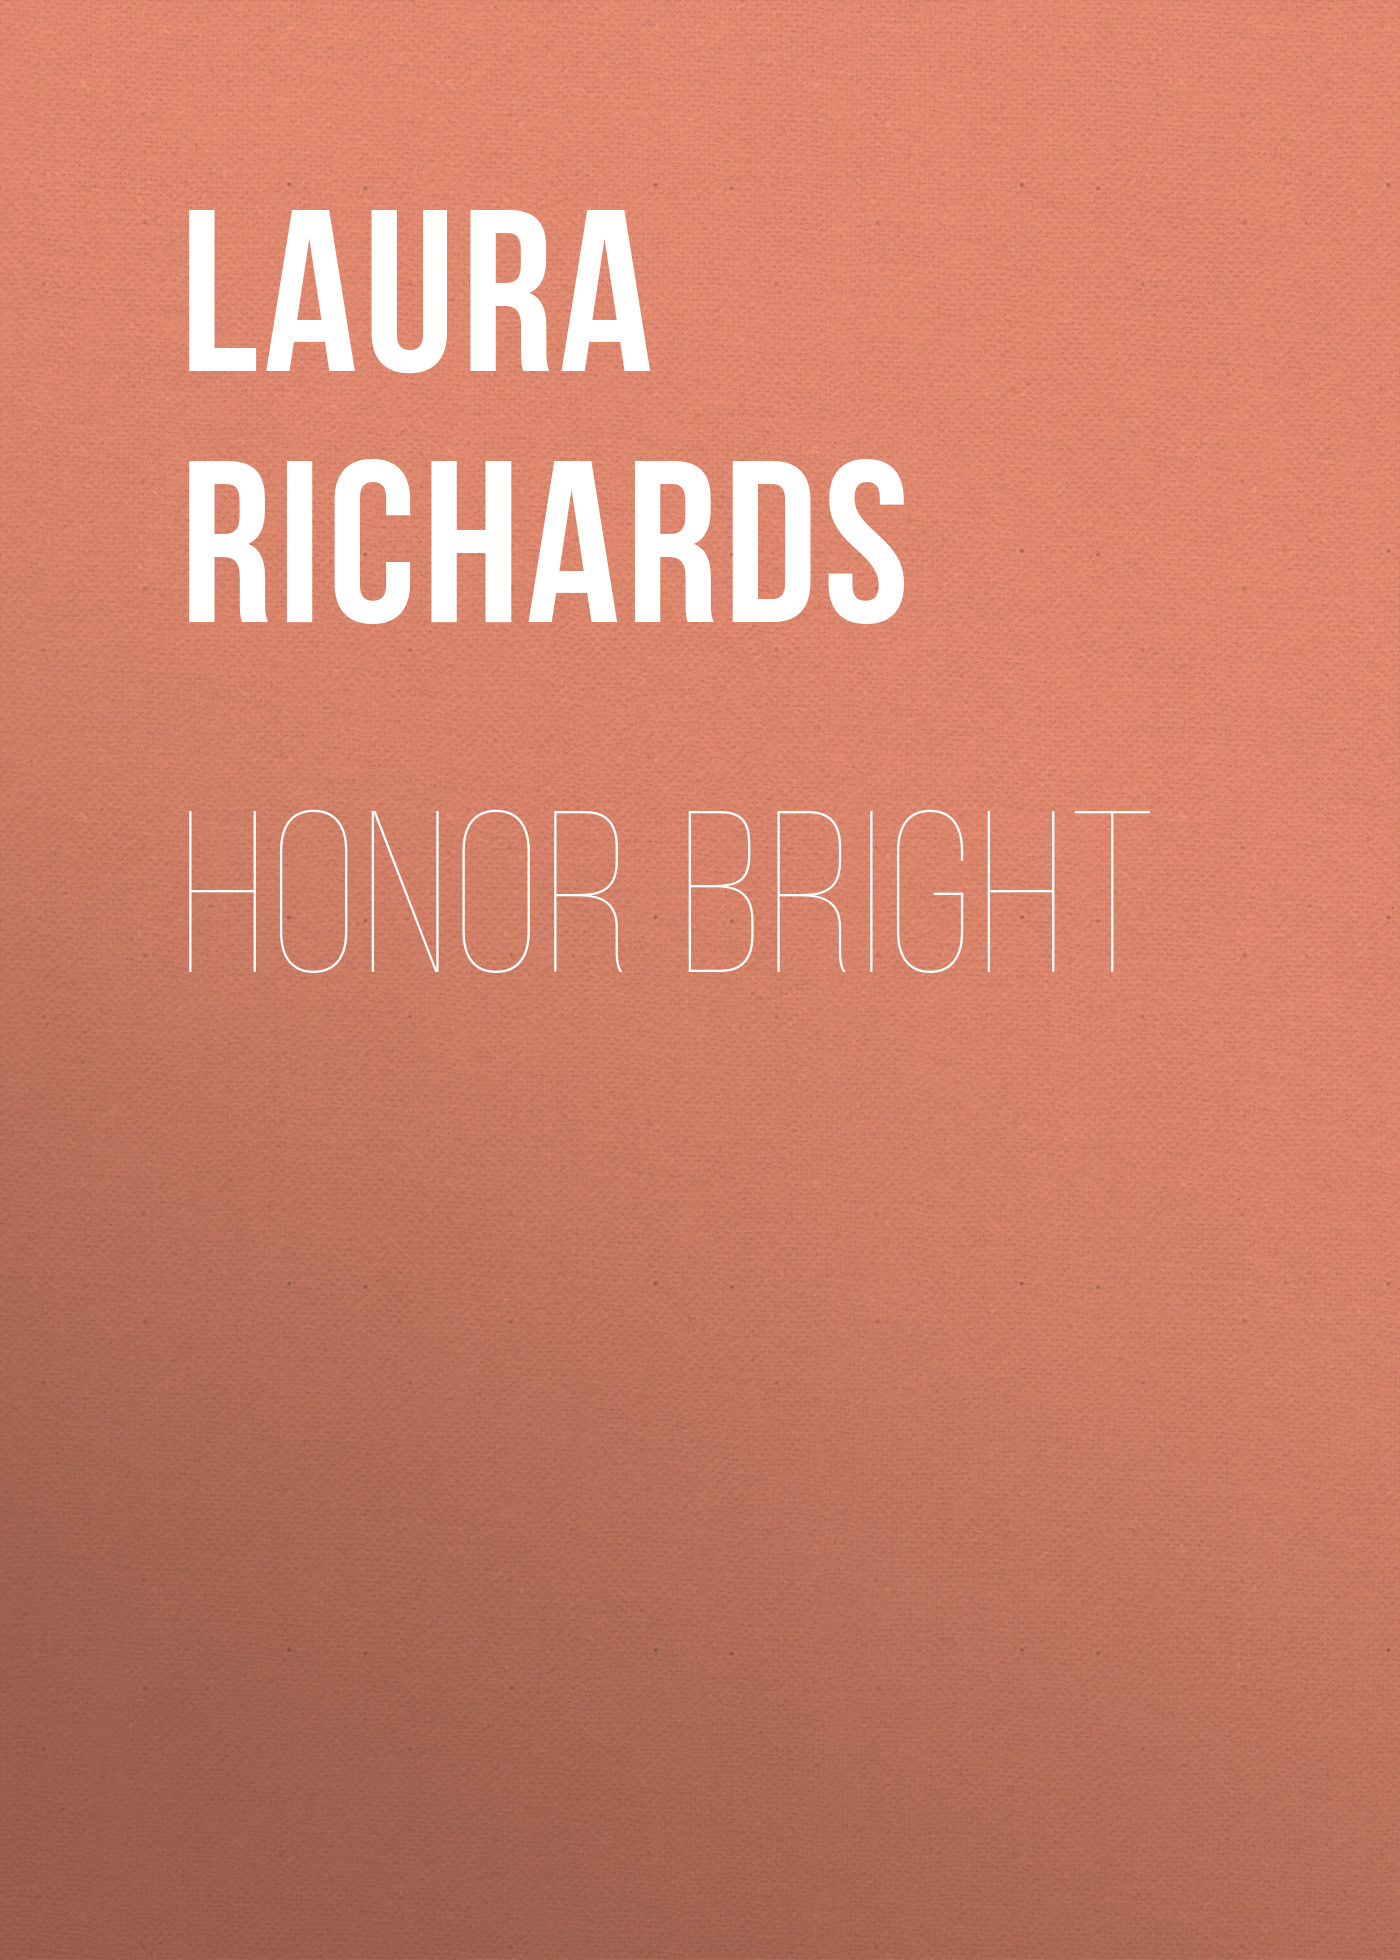 Книга Honor Bright из серии , созданная Laura Richards, может относится к жанру Зарубежная классика, Зарубежные детские книги, Иностранные языки. Стоимость электронной книги Honor Bright с идентификатором 23162763 составляет 5.99 руб.